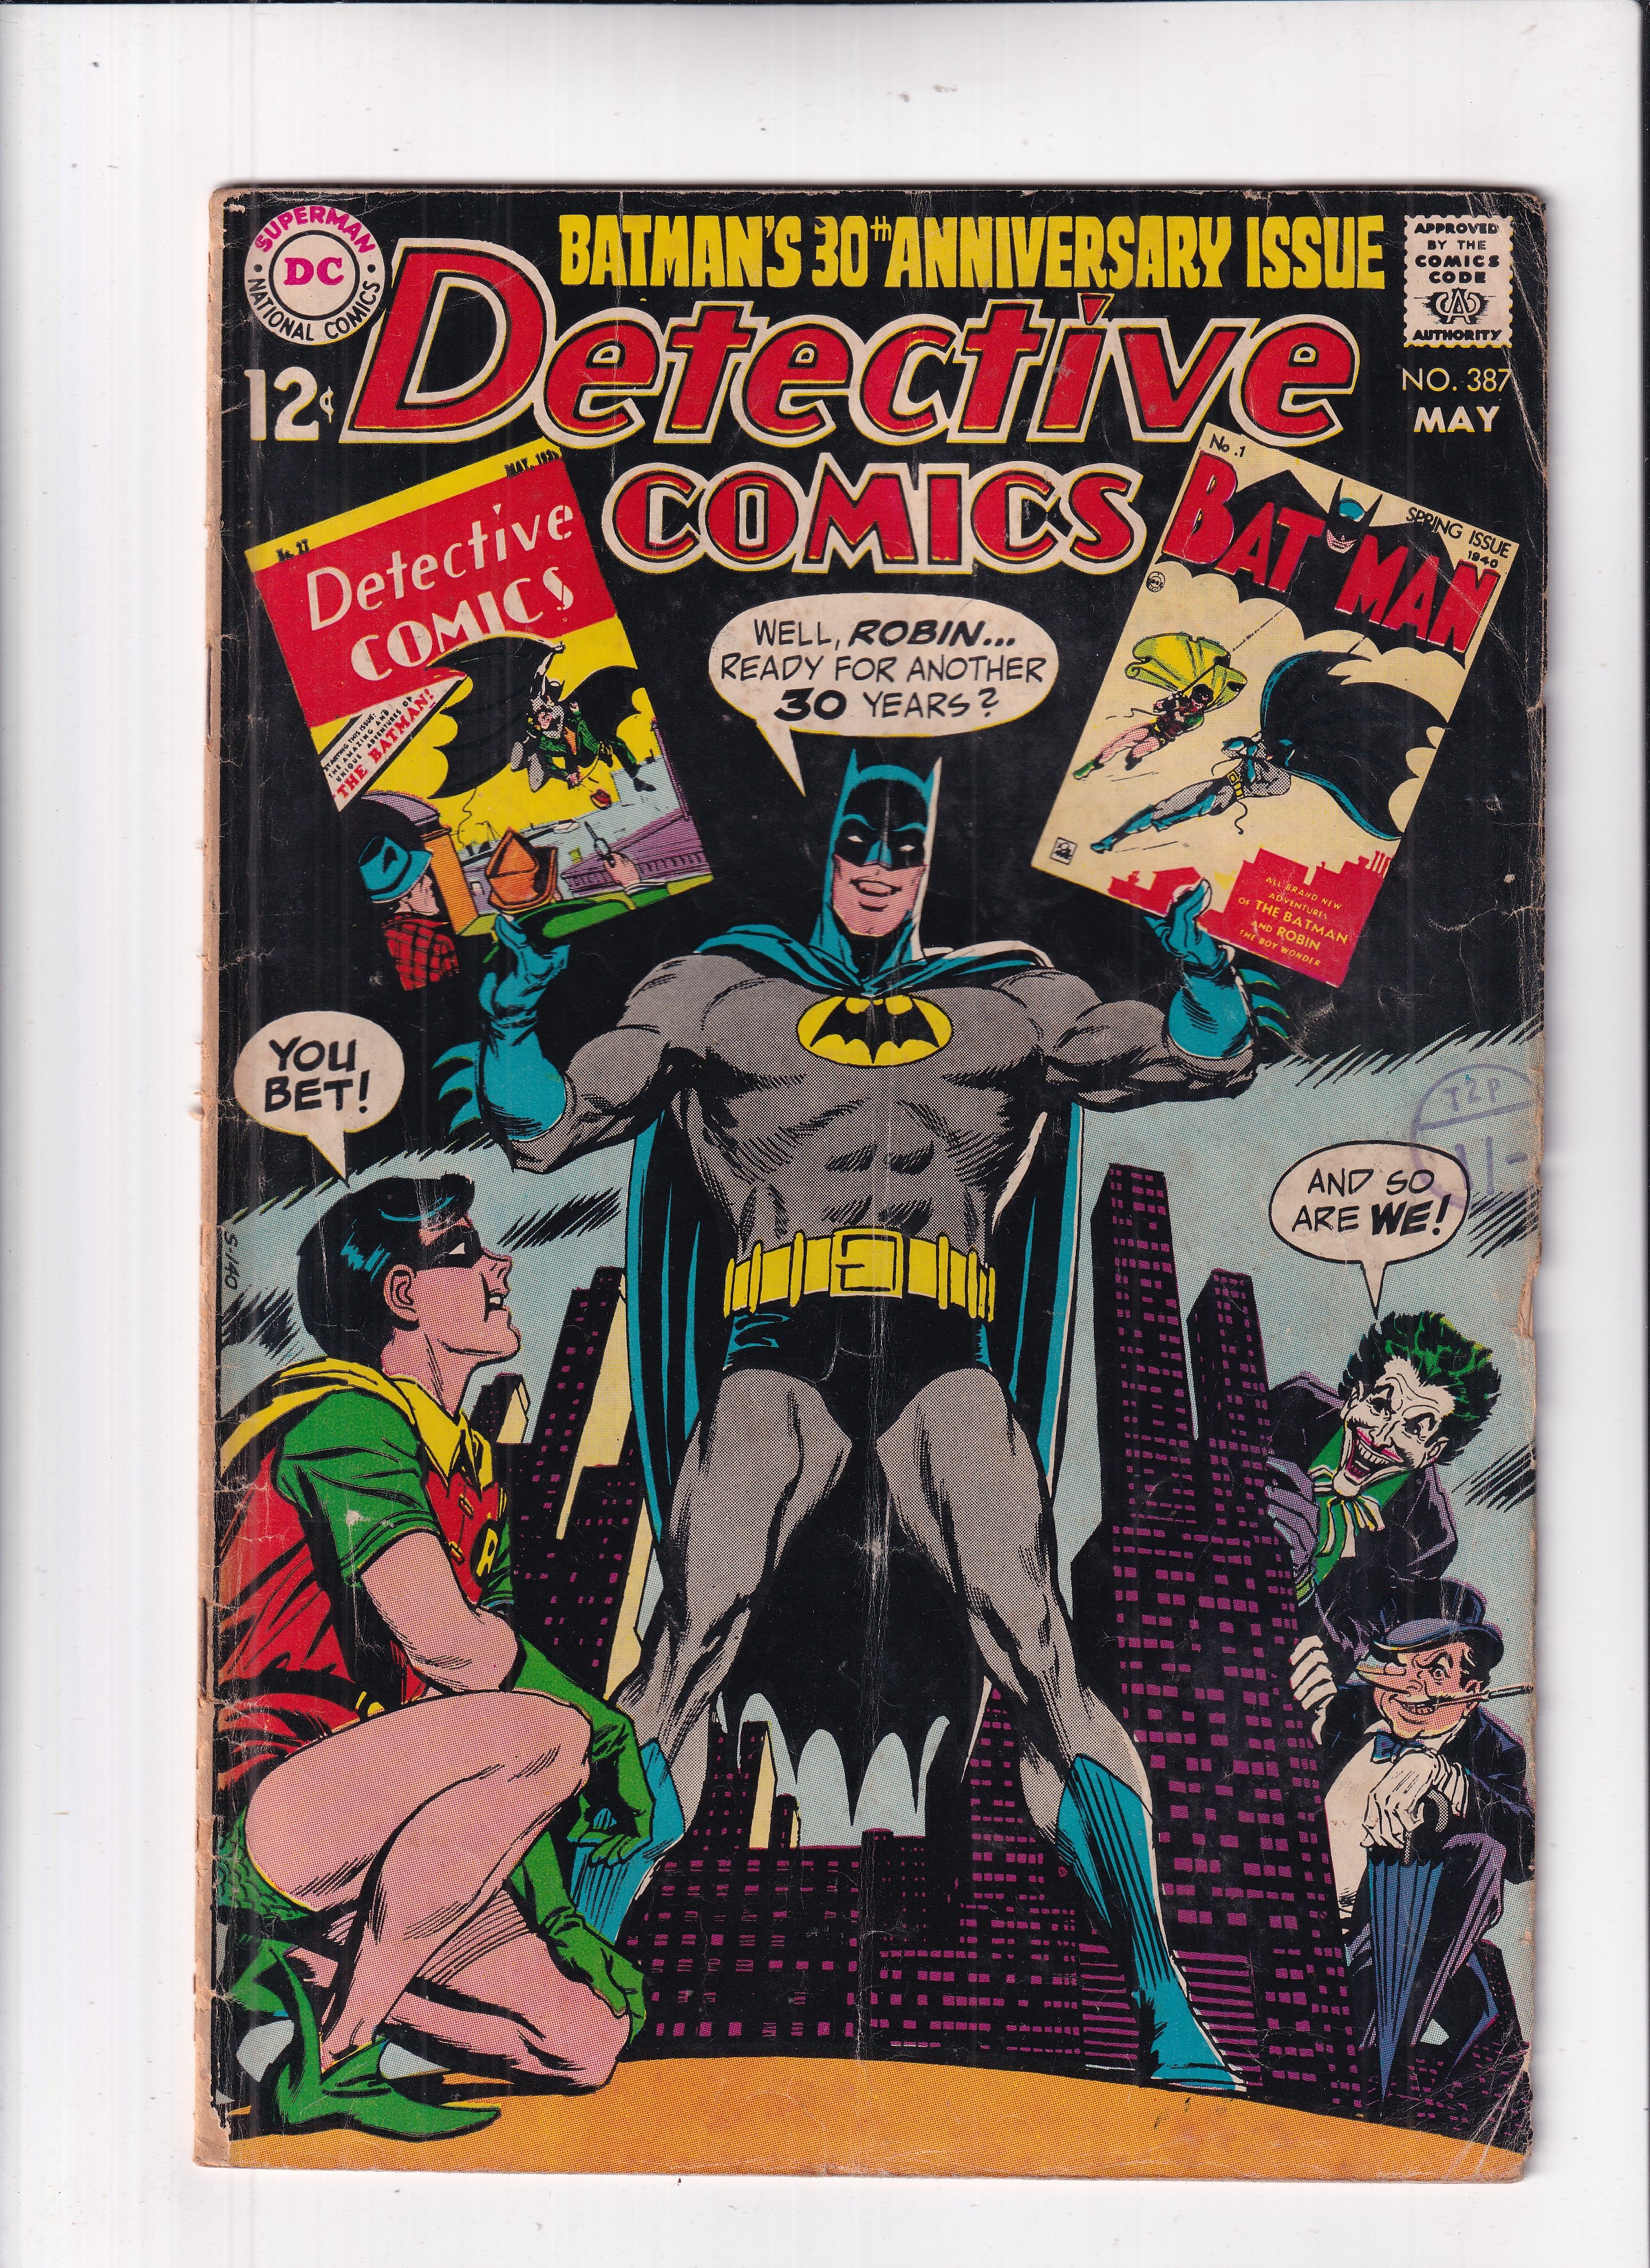 DETECTIVE COMICS #387 - Slab City Comics 